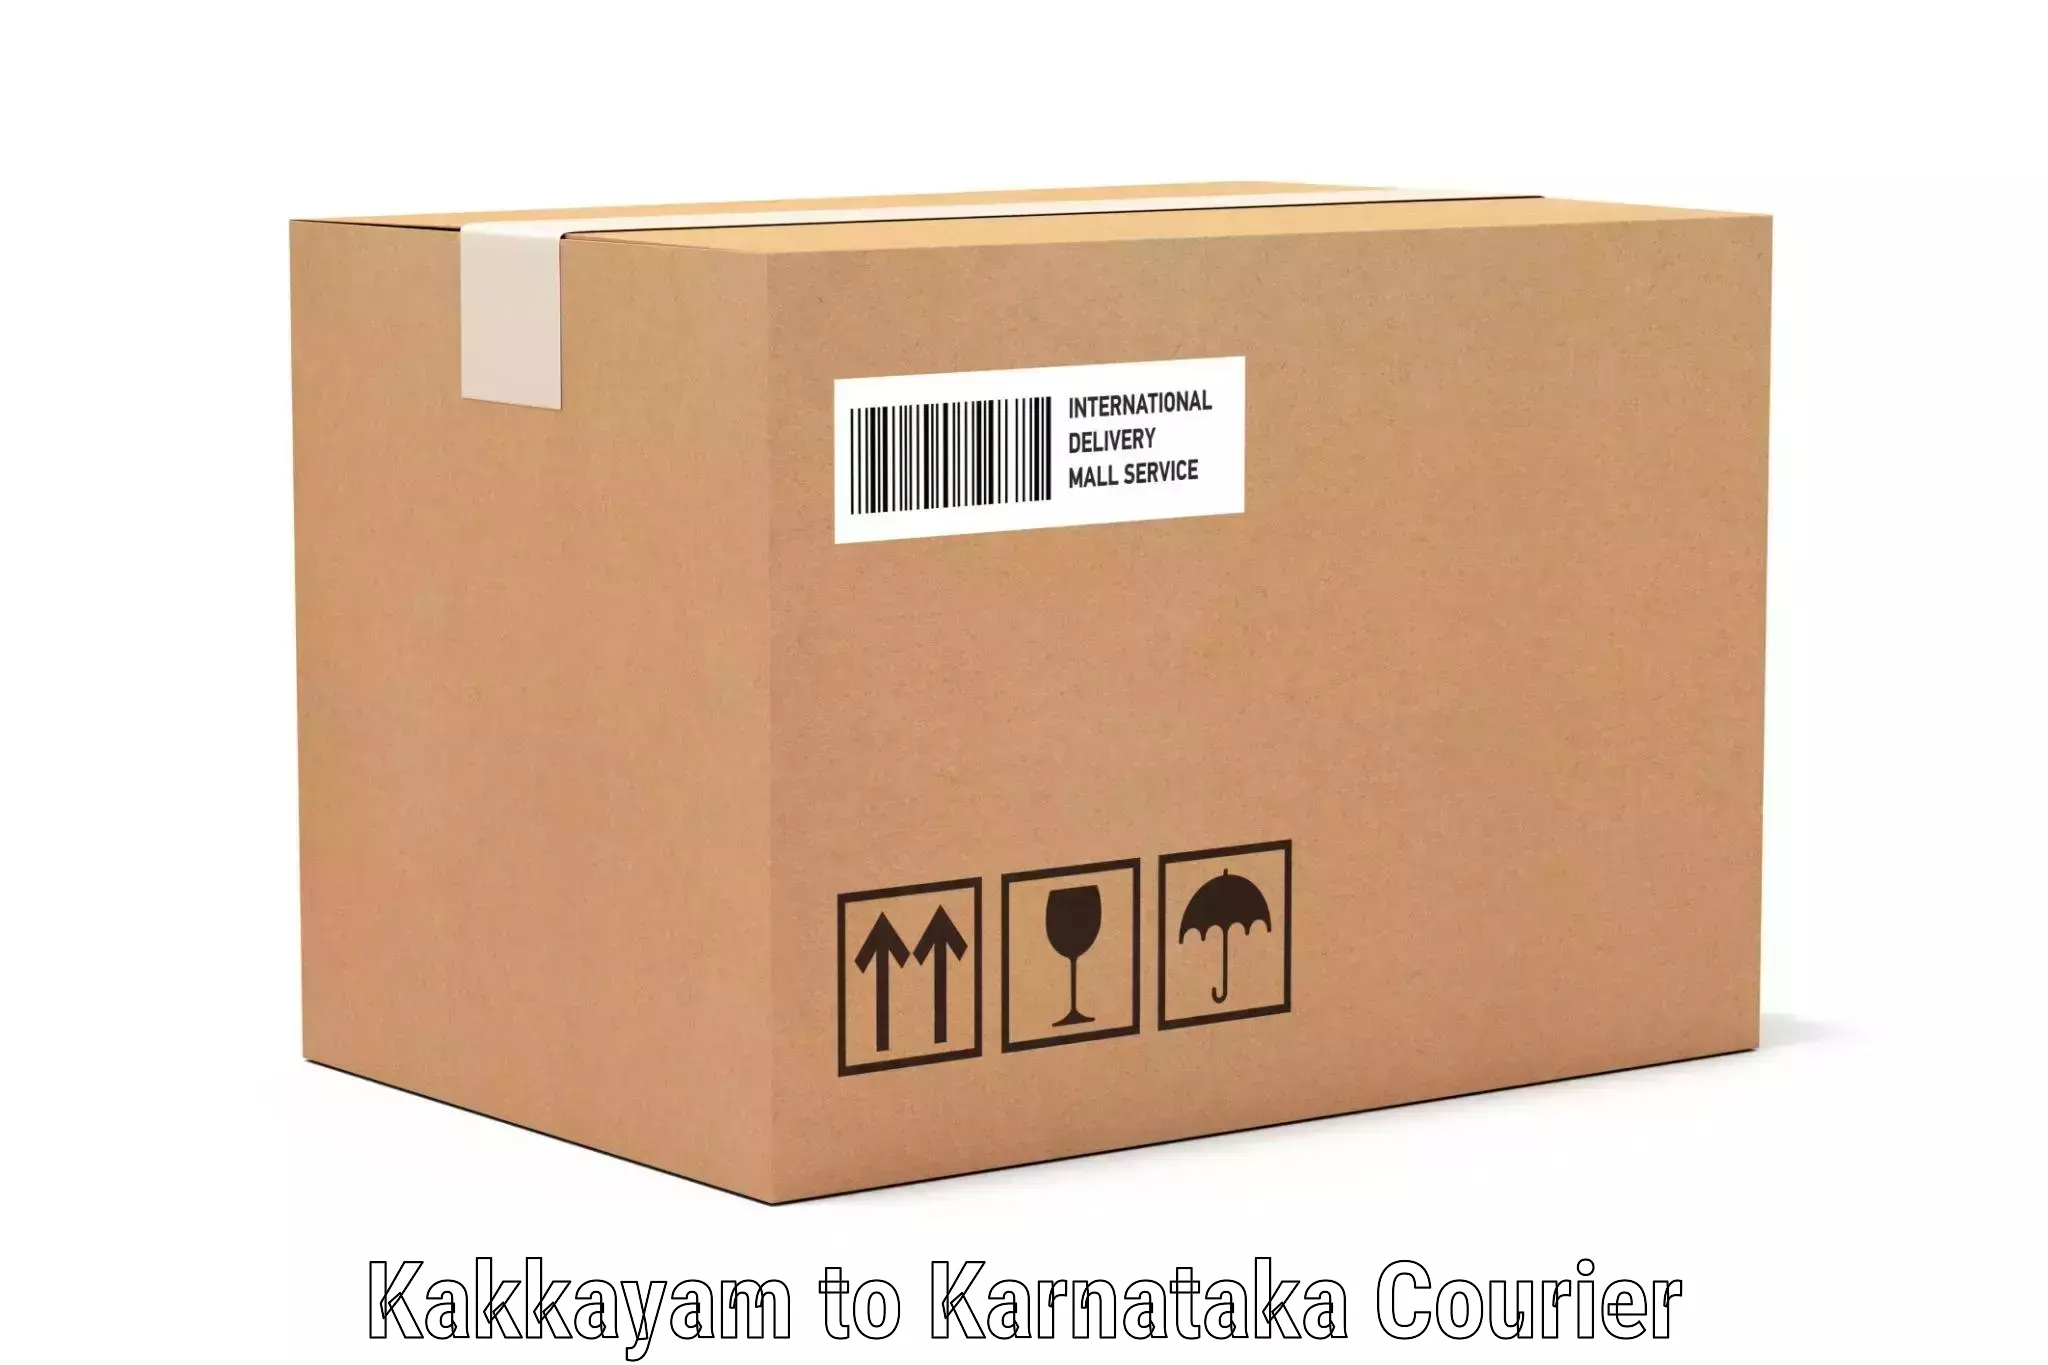 Professional baggage transport Kakkayam to Karnataka